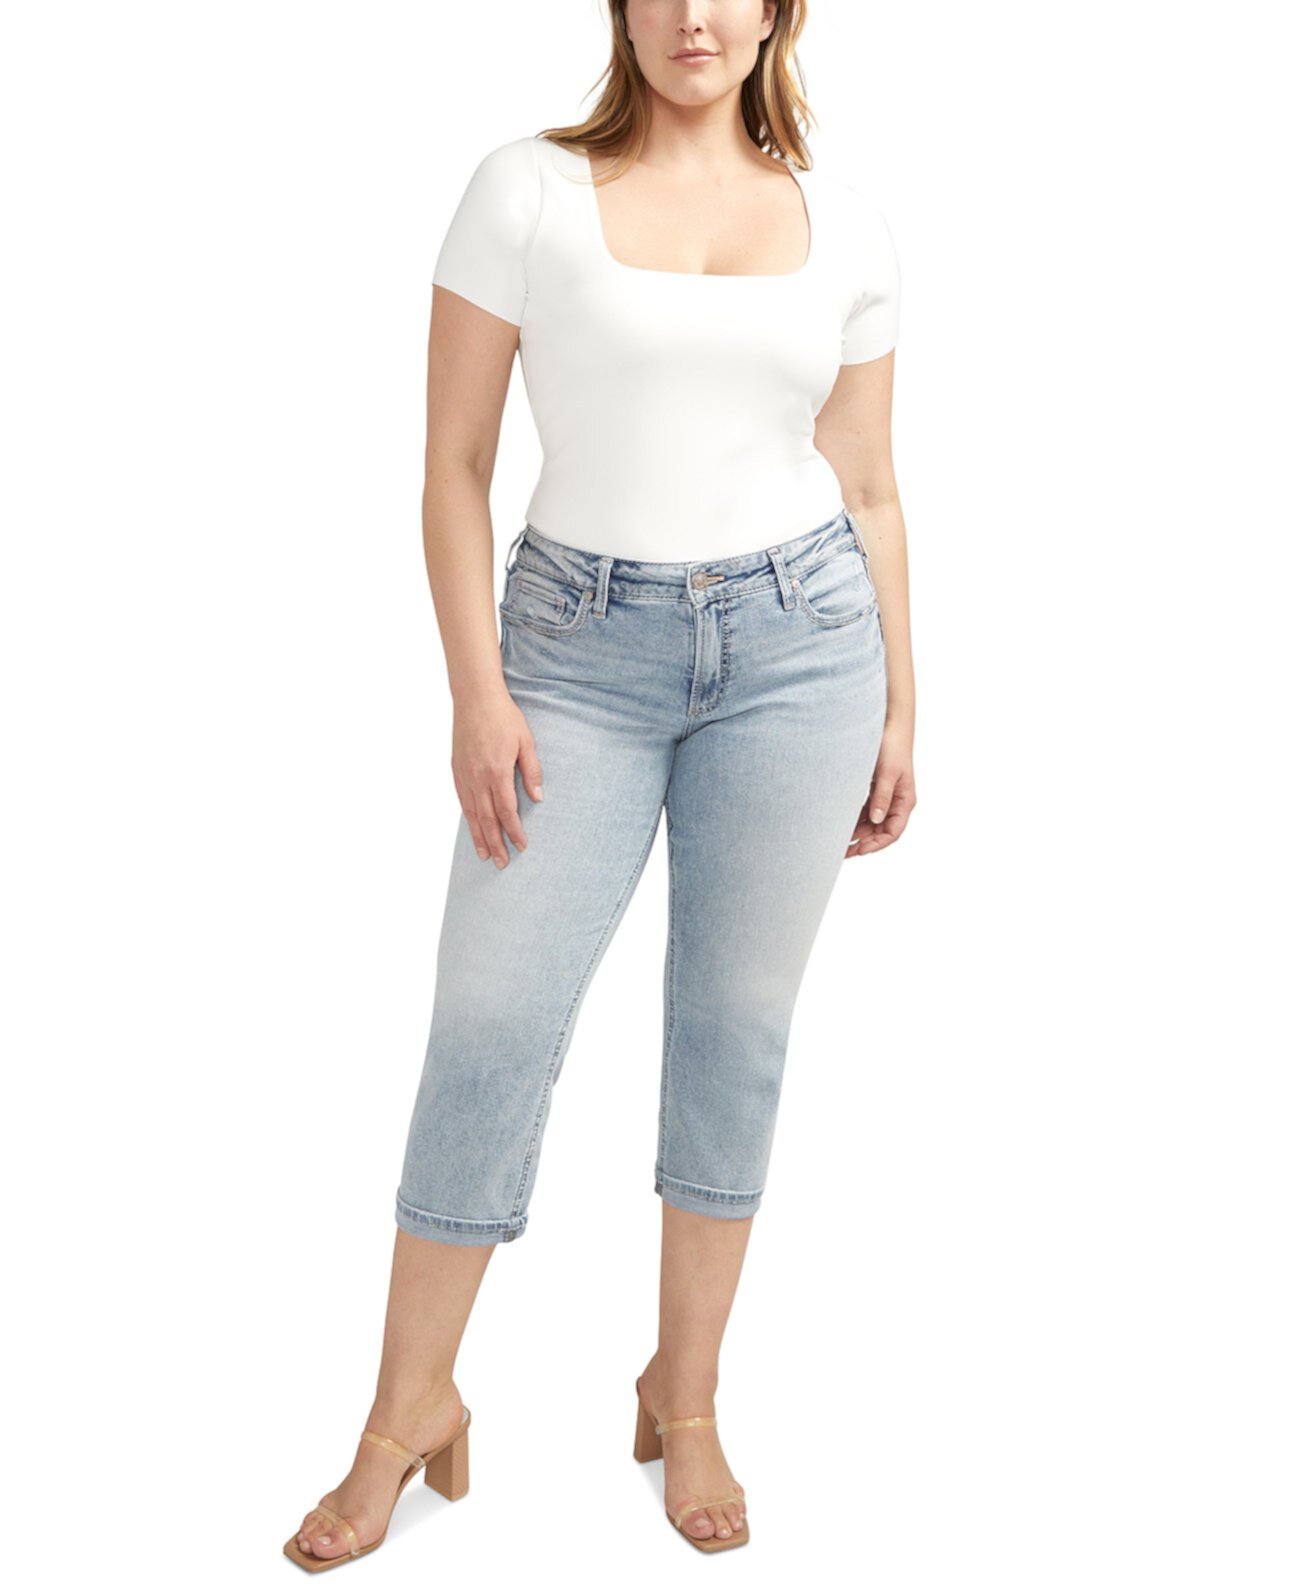 Plus Size Britt High-Rise Curvy-Fit Capri Jeans Silver Jeans Co.